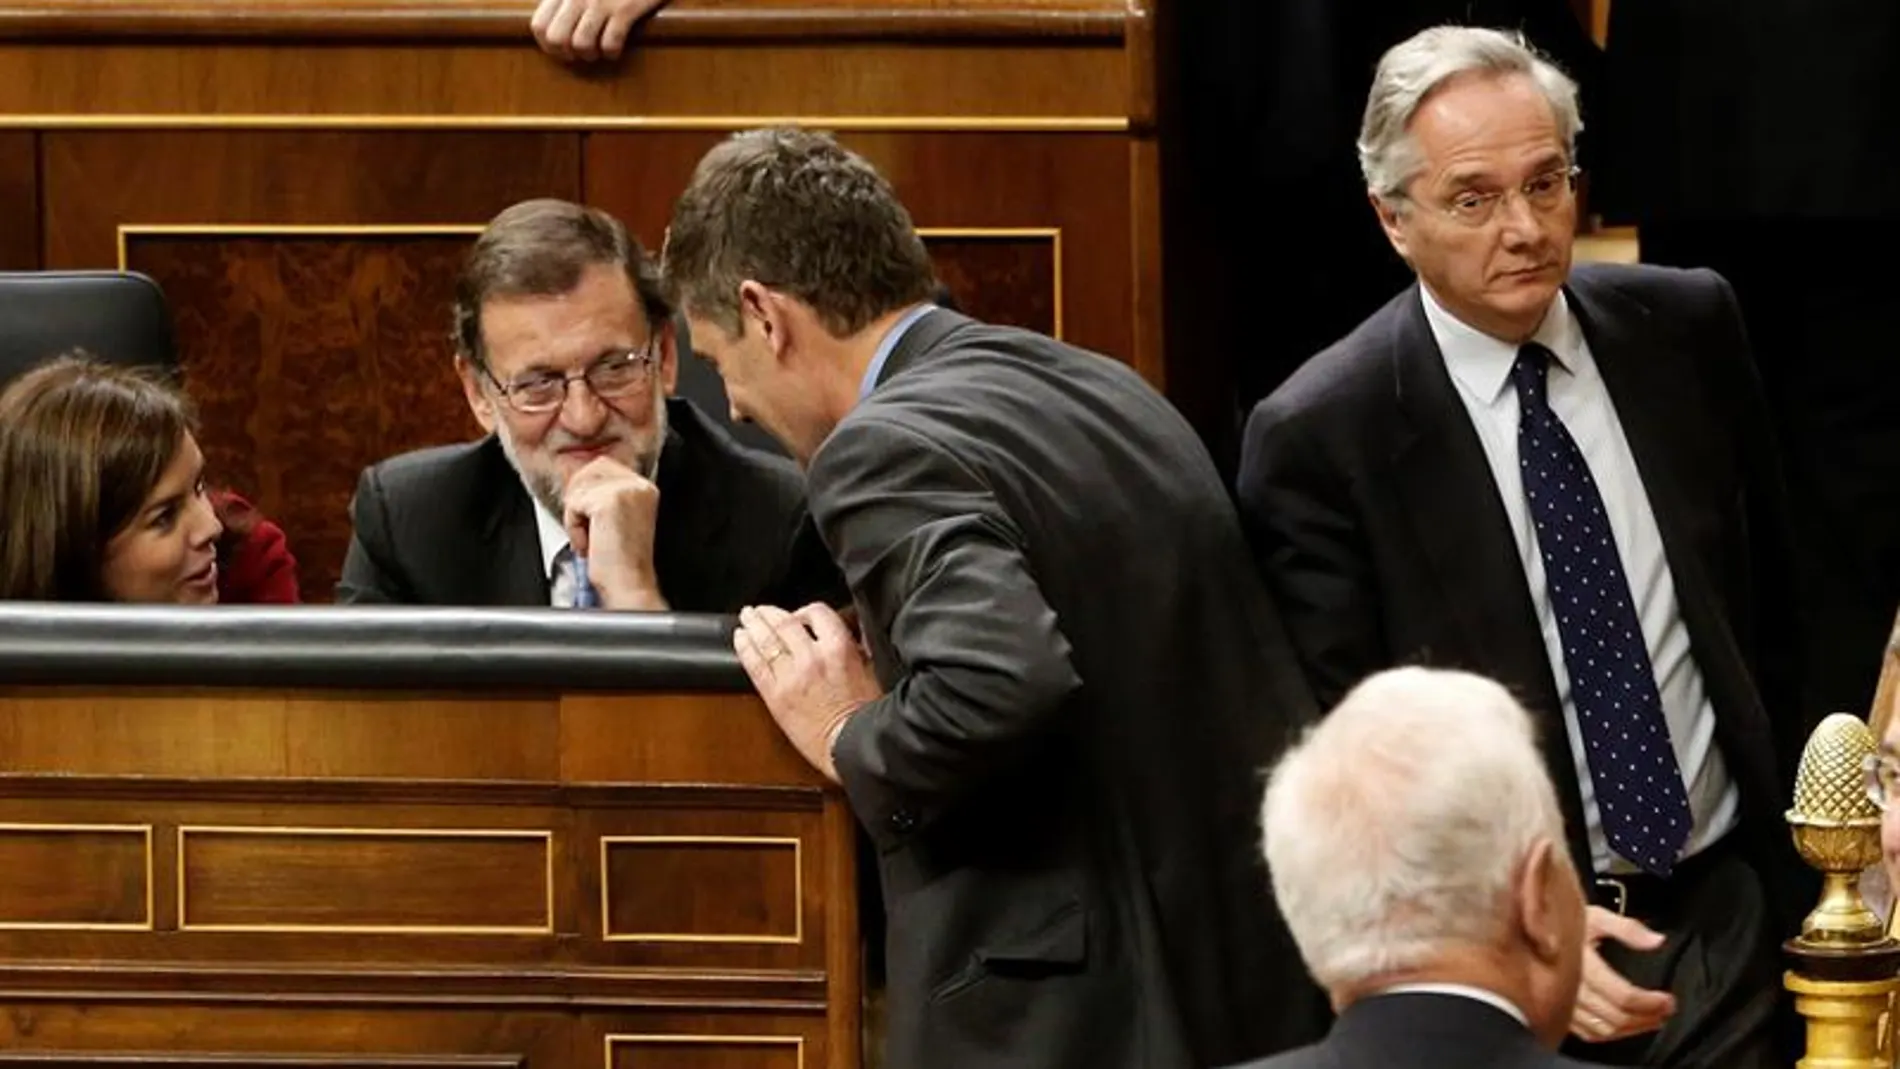 El diputado Pedro Gómez de la Serna pasa al lado de Rajoy